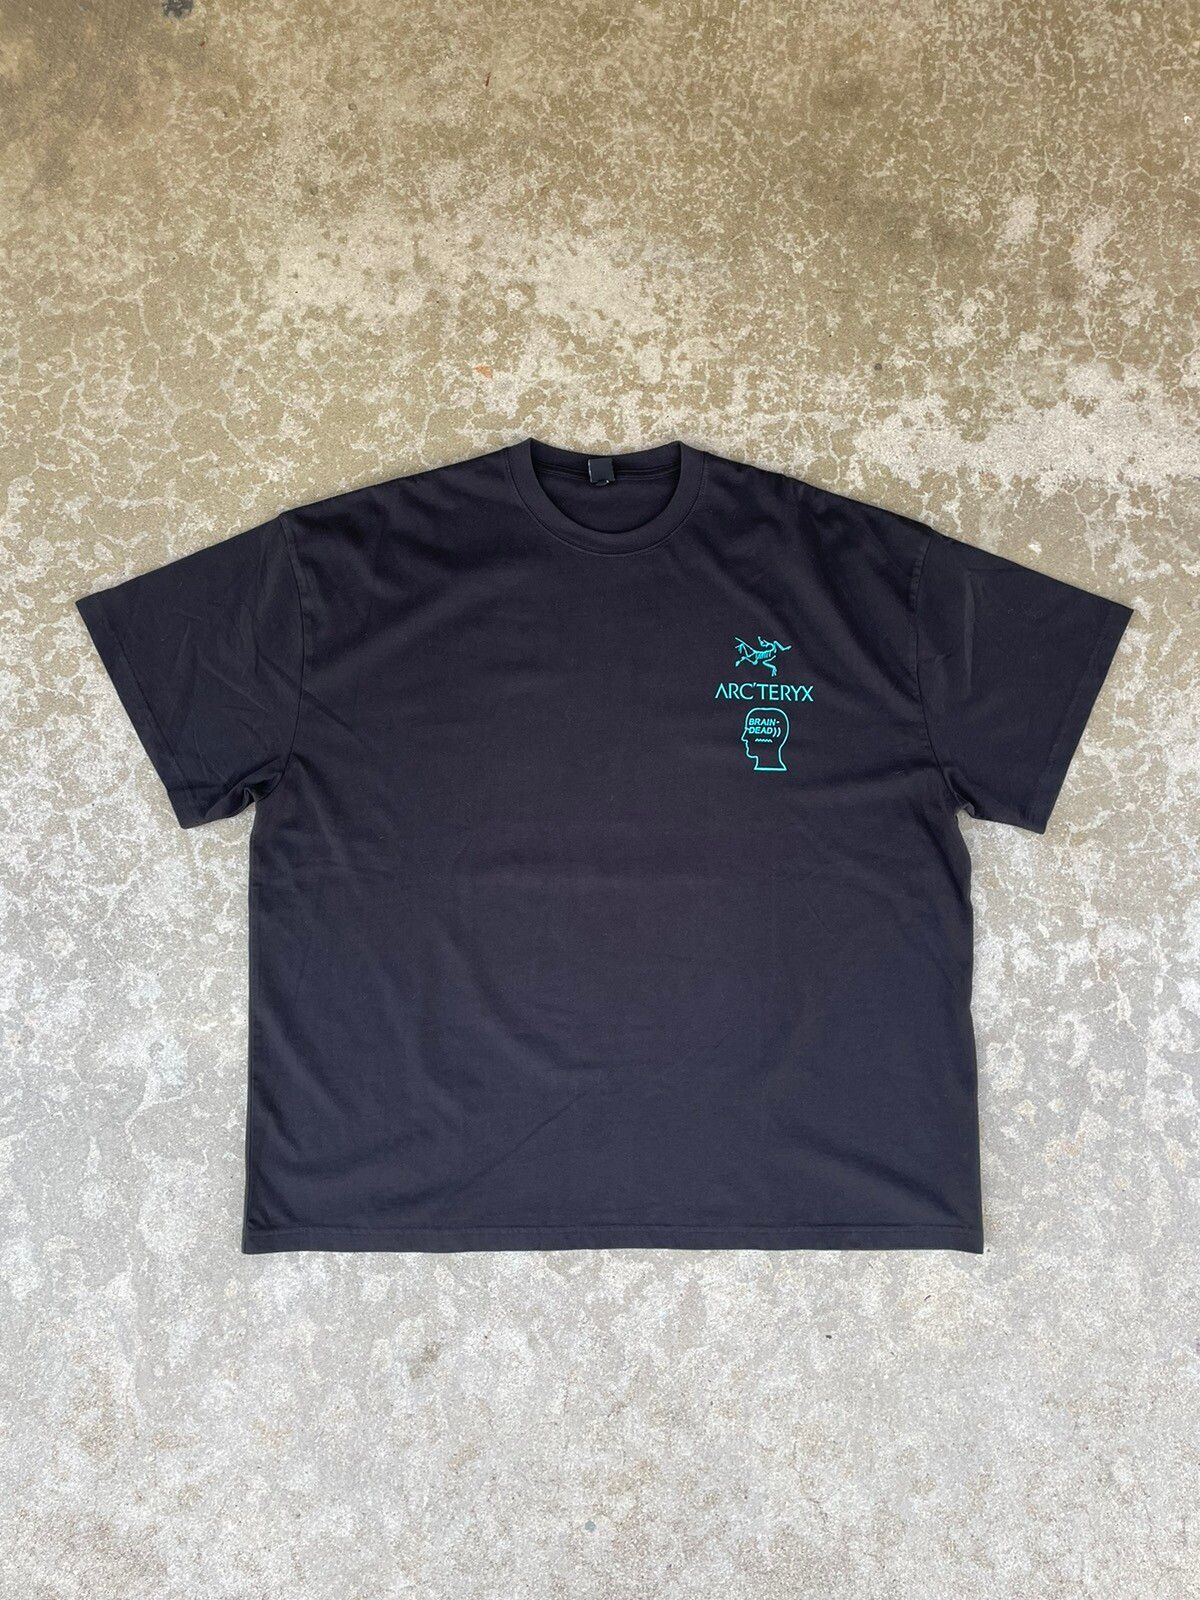 Arc'Teryx Brain Dead X Arc’teryx Limited edition shirt | Grailed